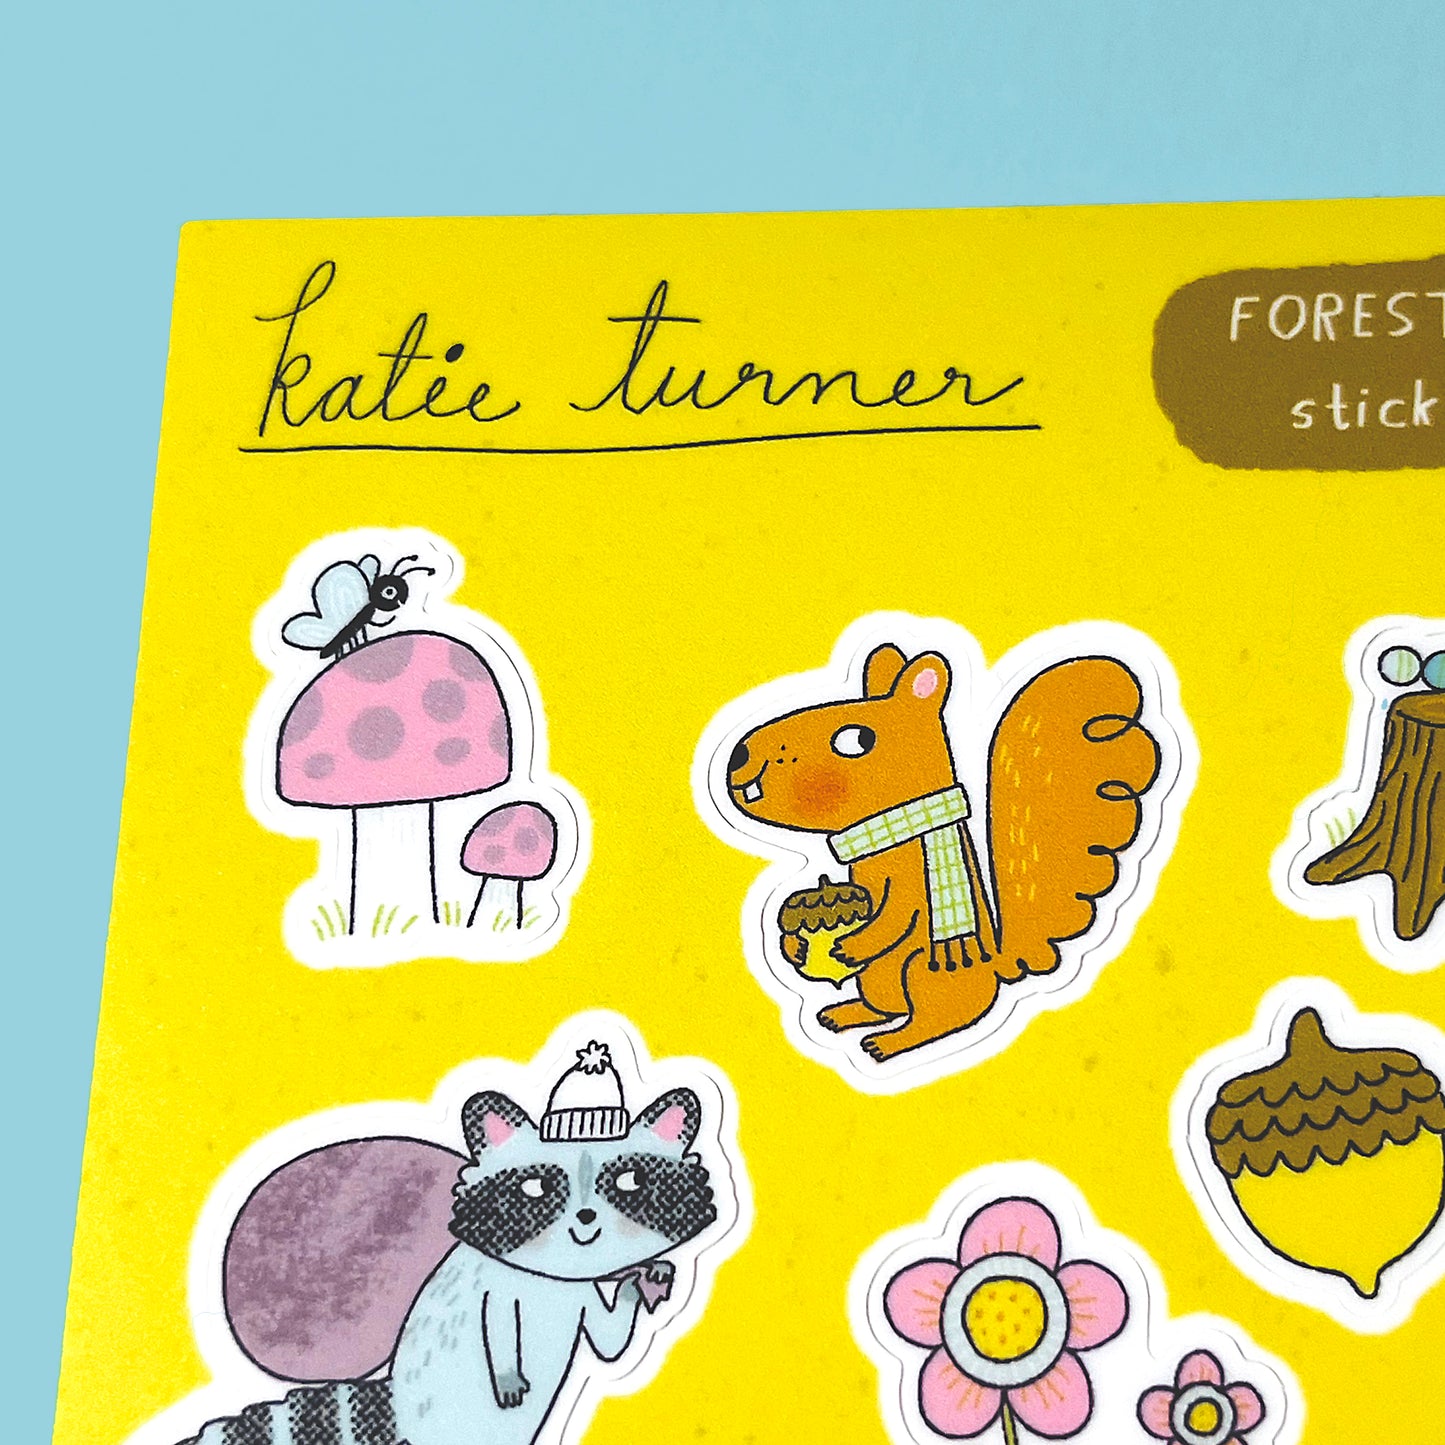 Forest Friends Sticker Sheet